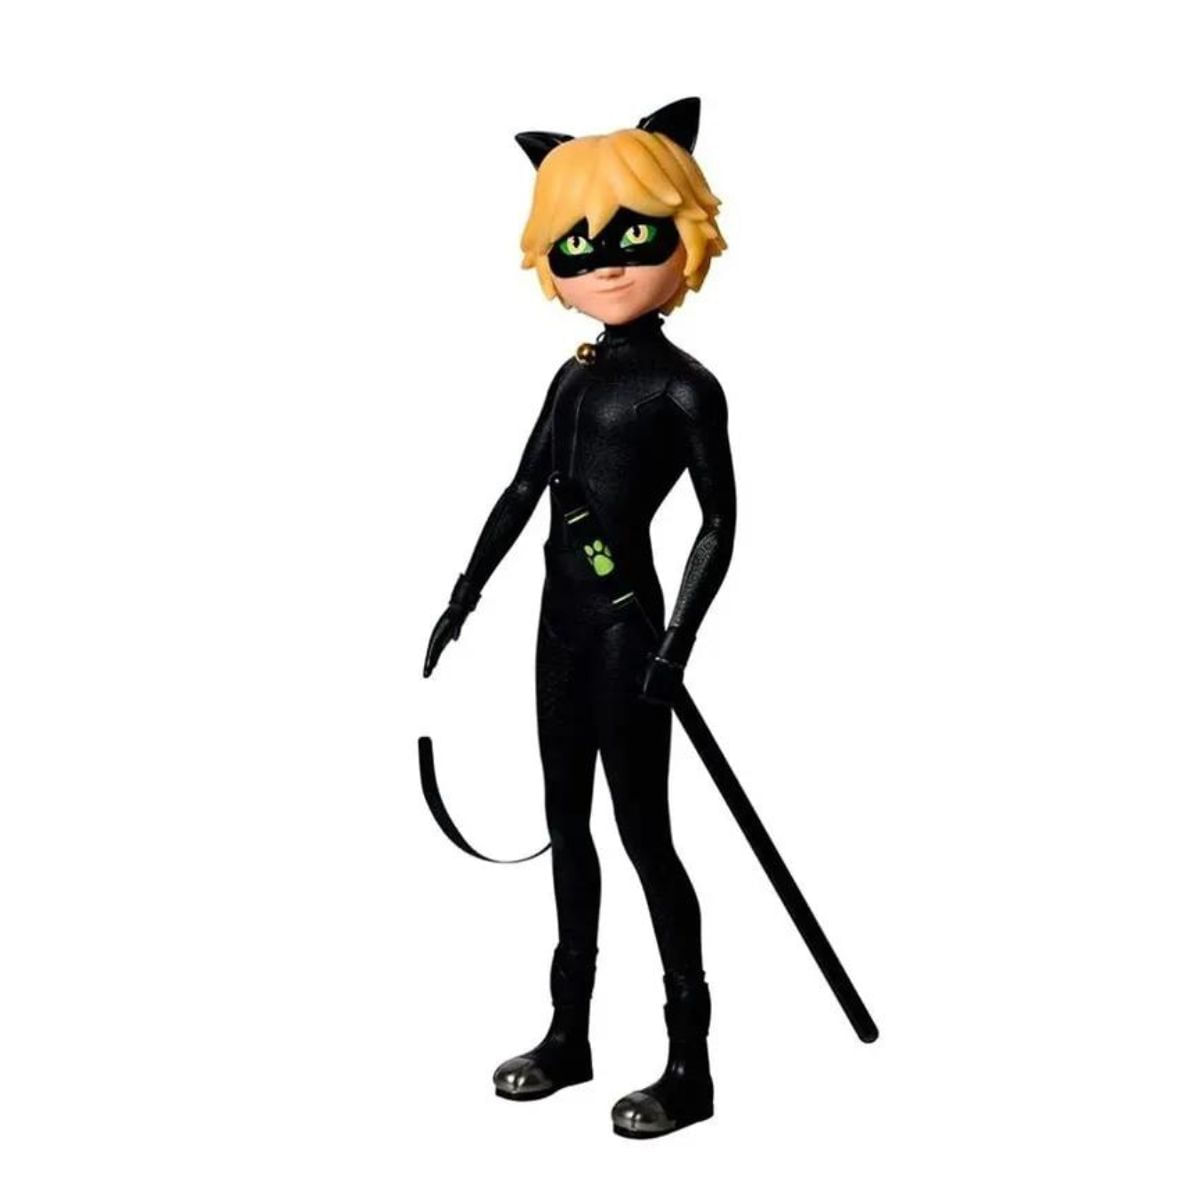 Boneca Miraculous Cat Noir - Bumerang Brinquedos